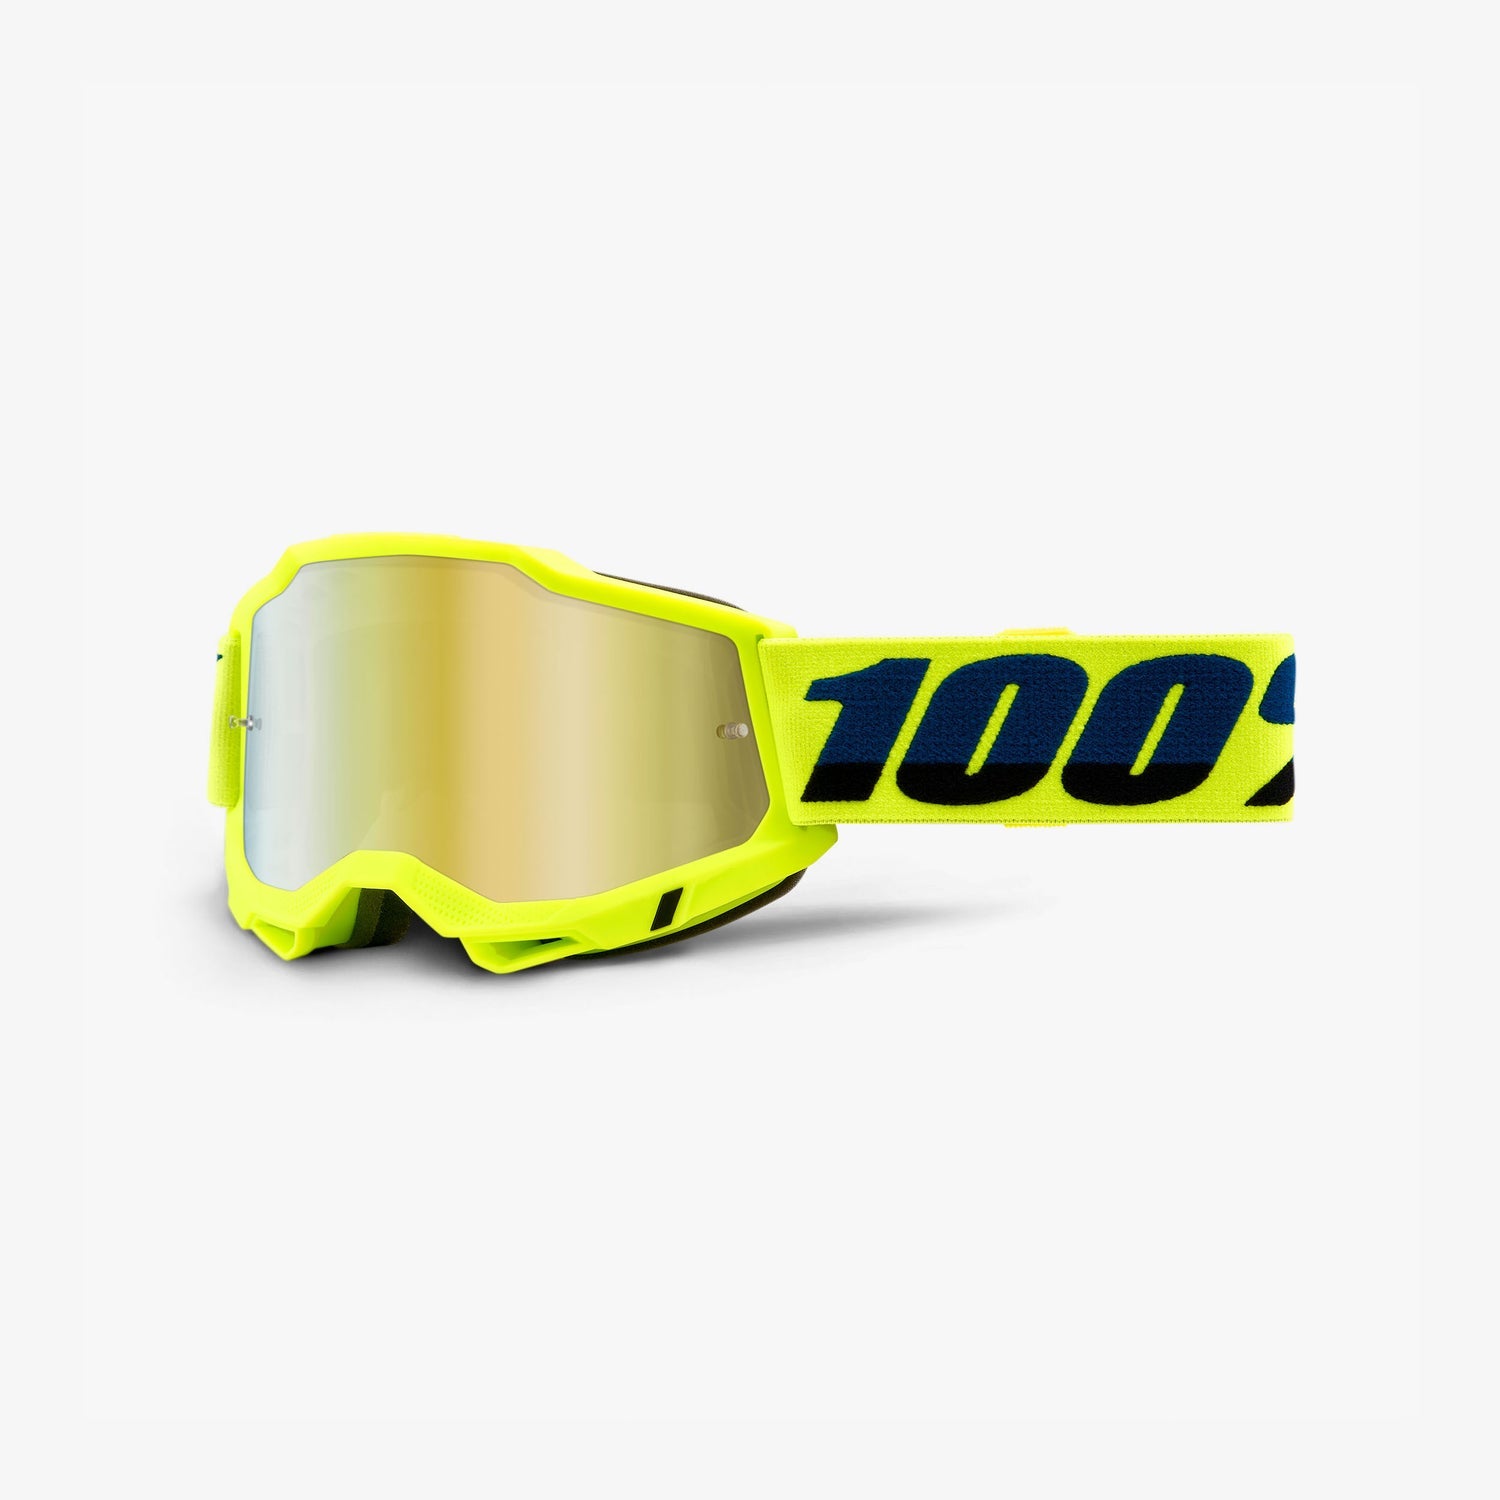 100% - Accuri 2 Mirror Goggles